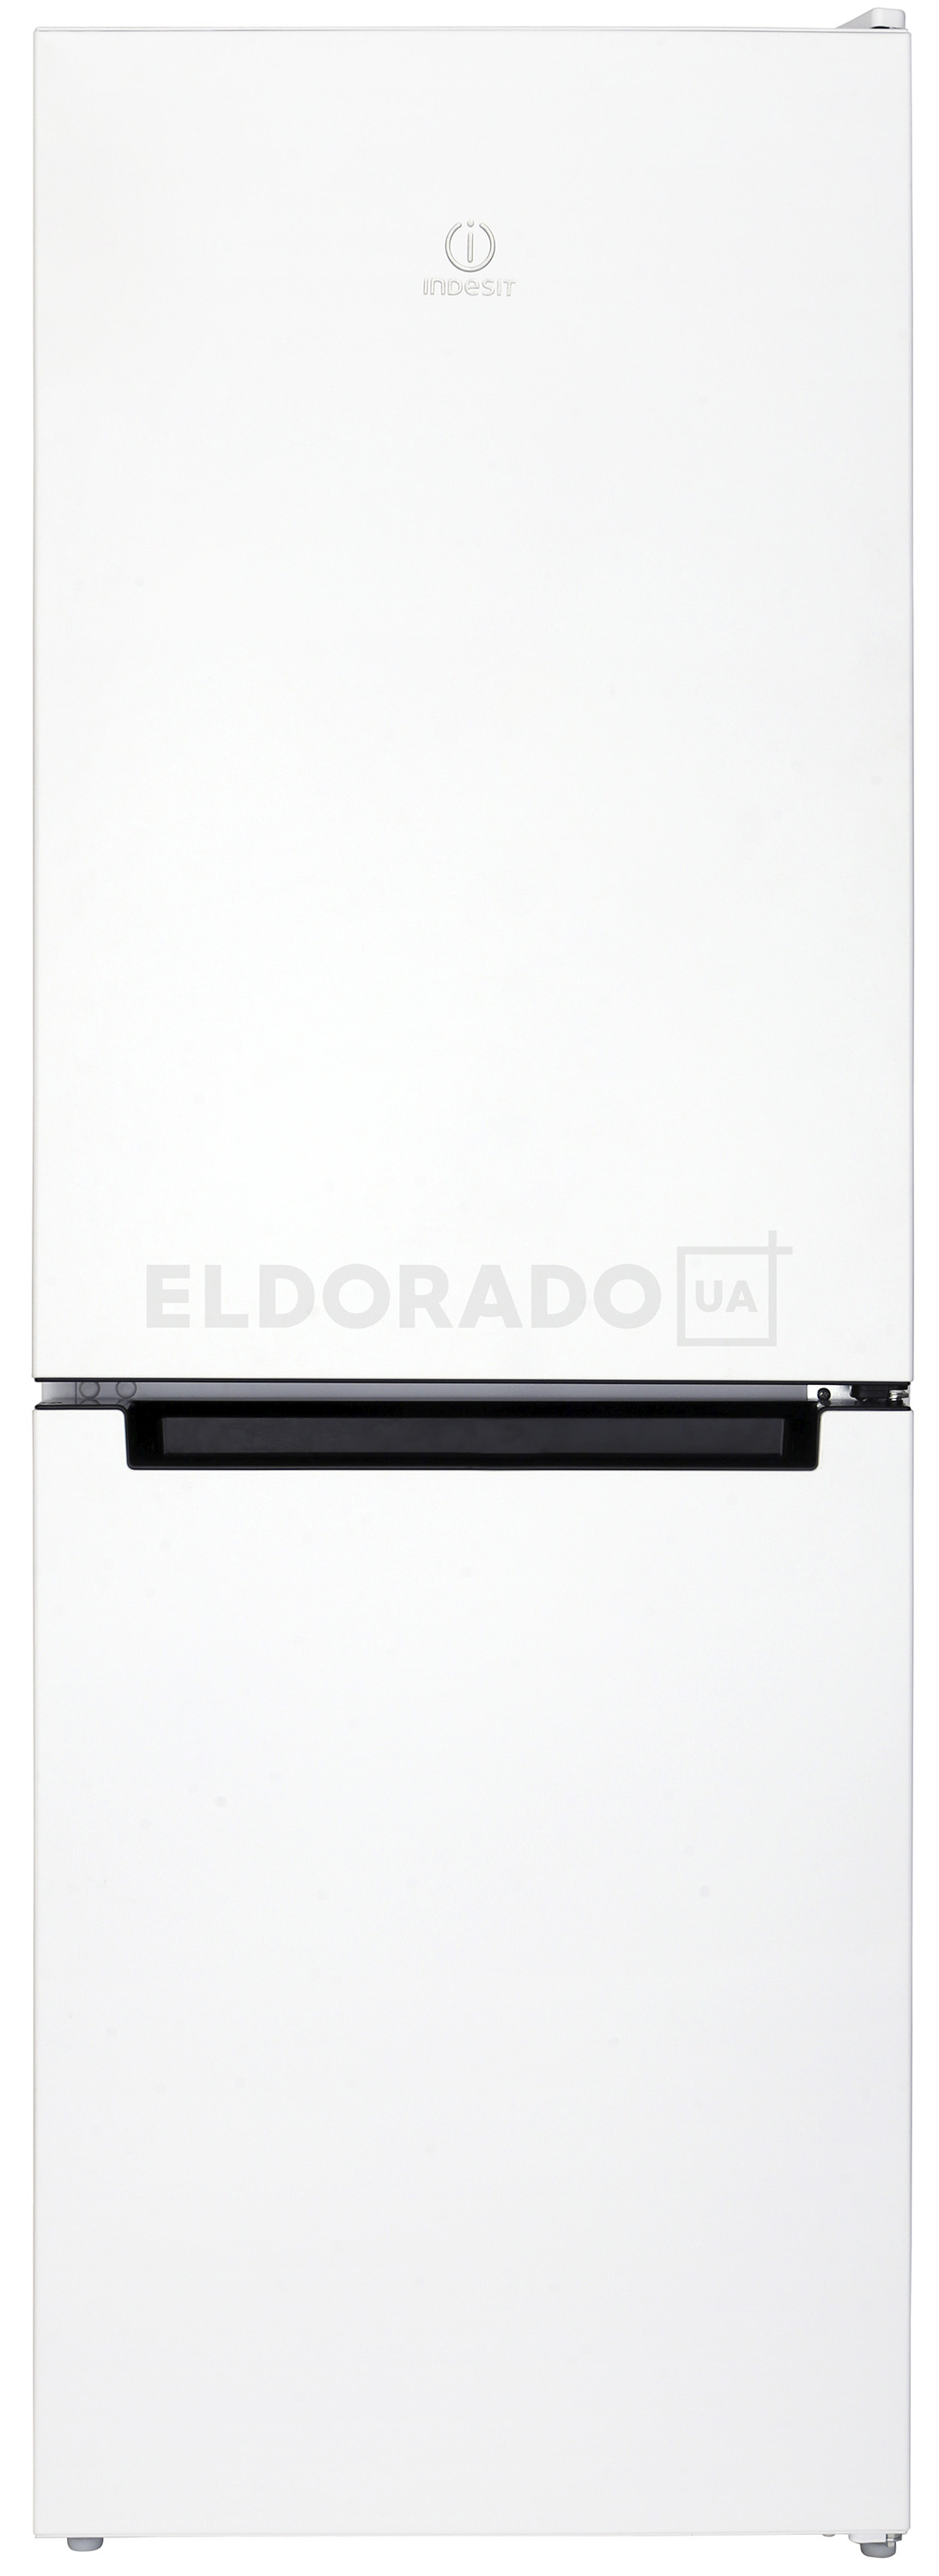 Акция на Холодильник INDESIT DS 3161 W (UA) от Eldorado